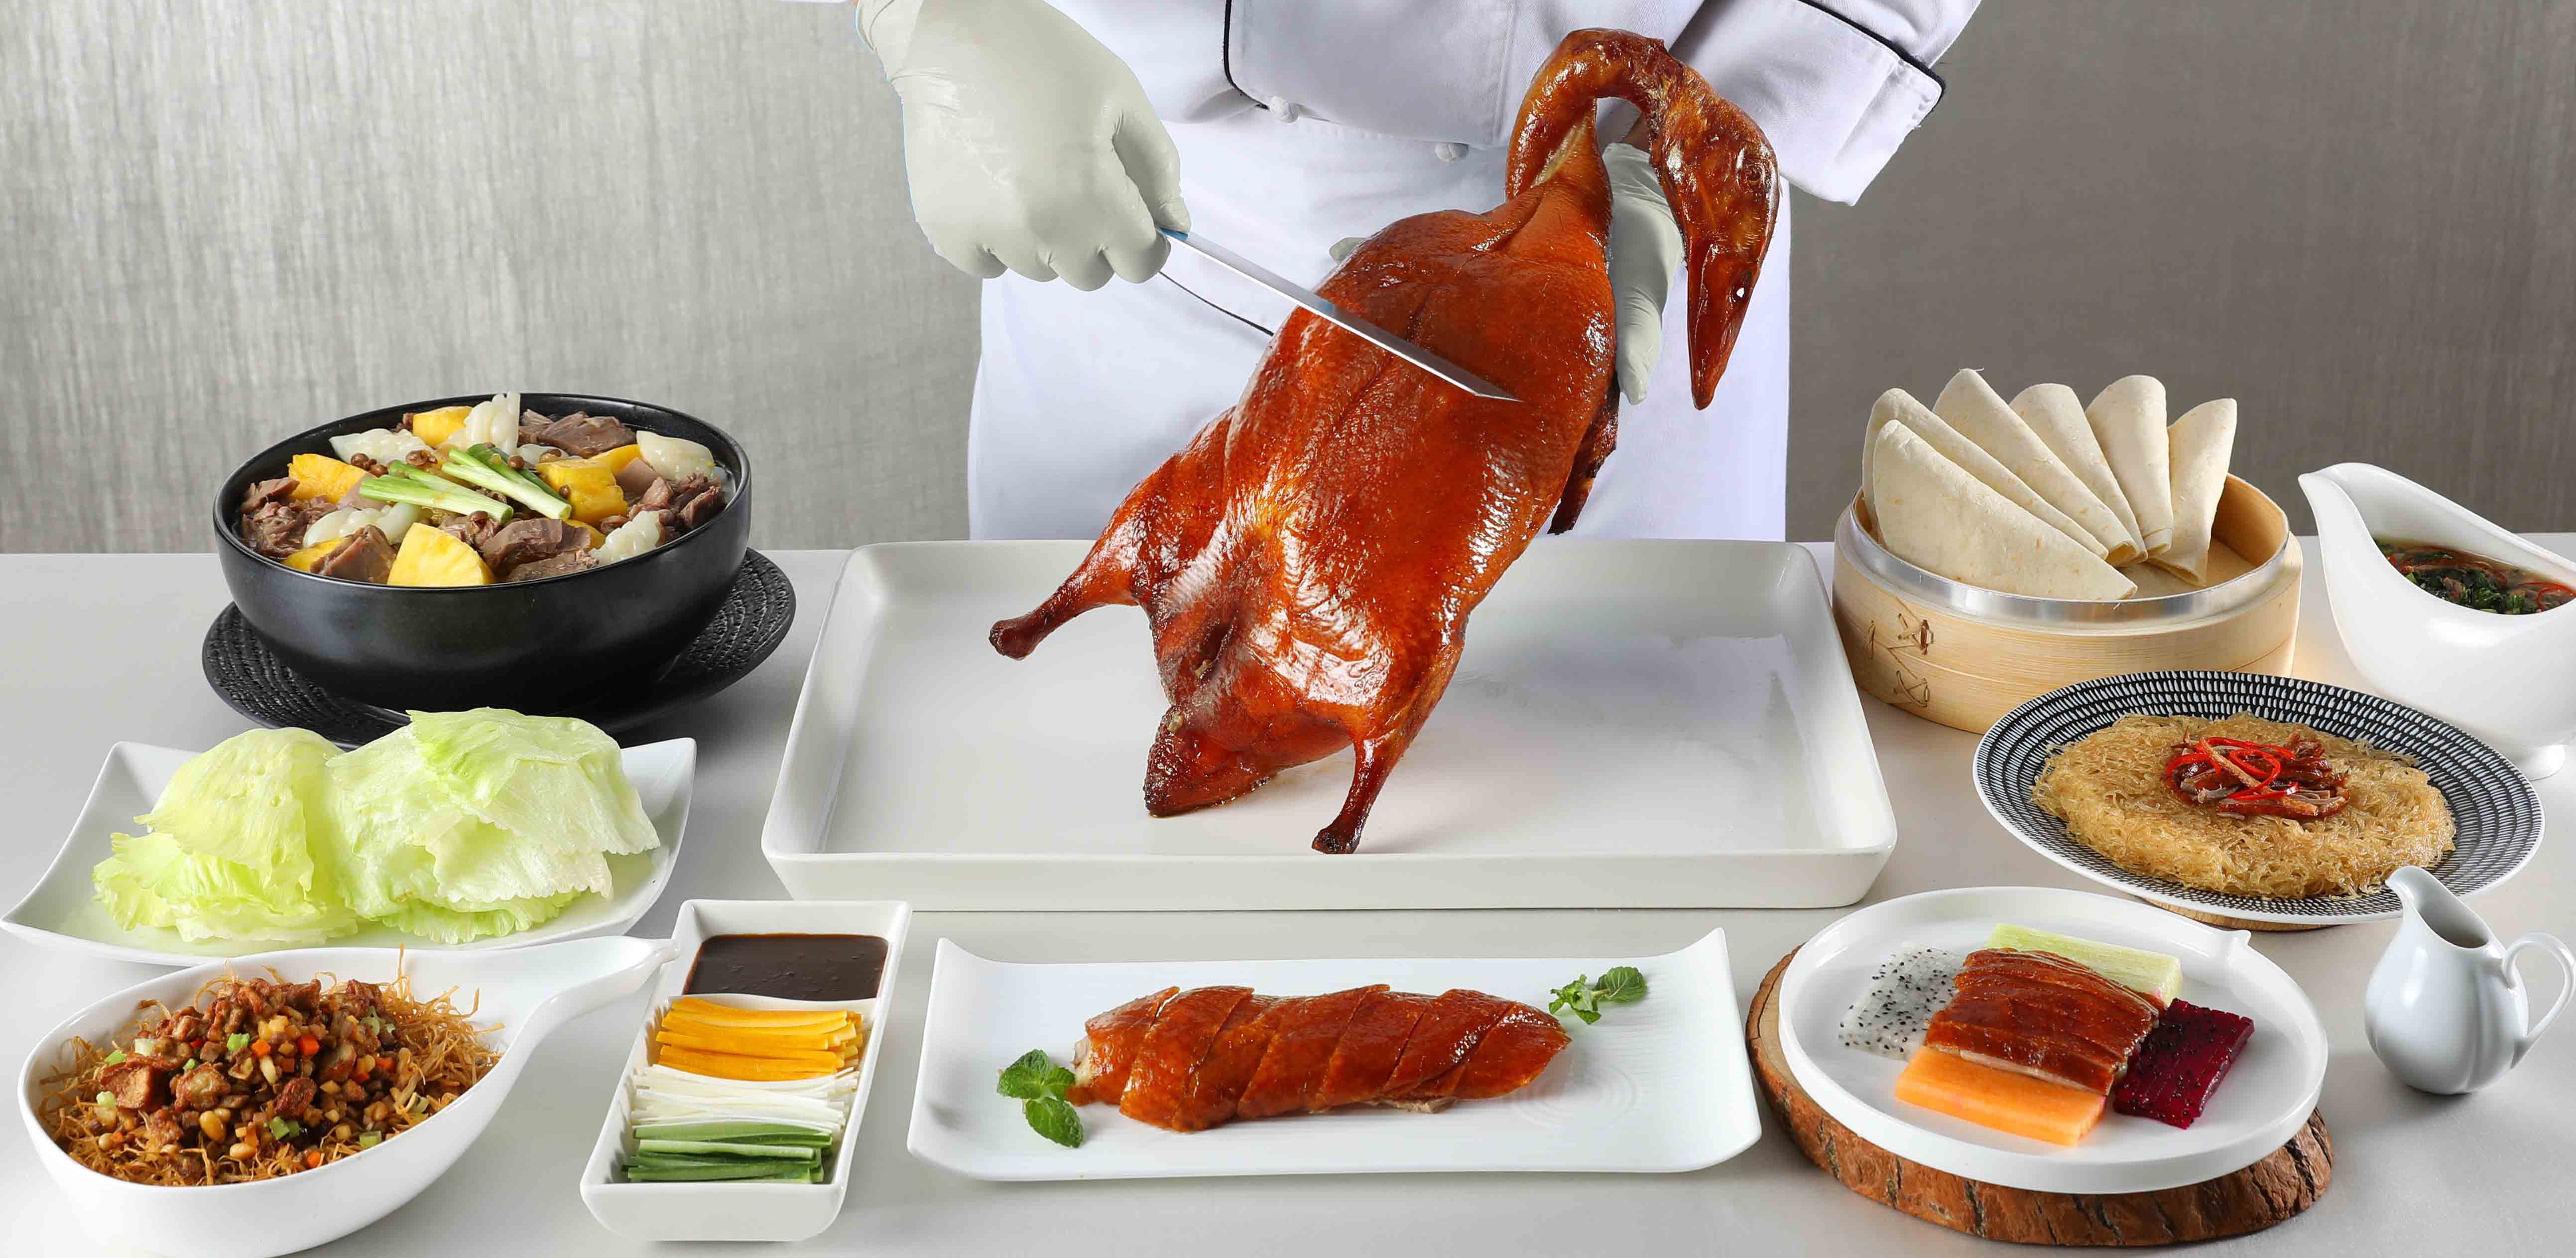 新北粵菜餐廳「望月樓」招牌烤鴨五吃